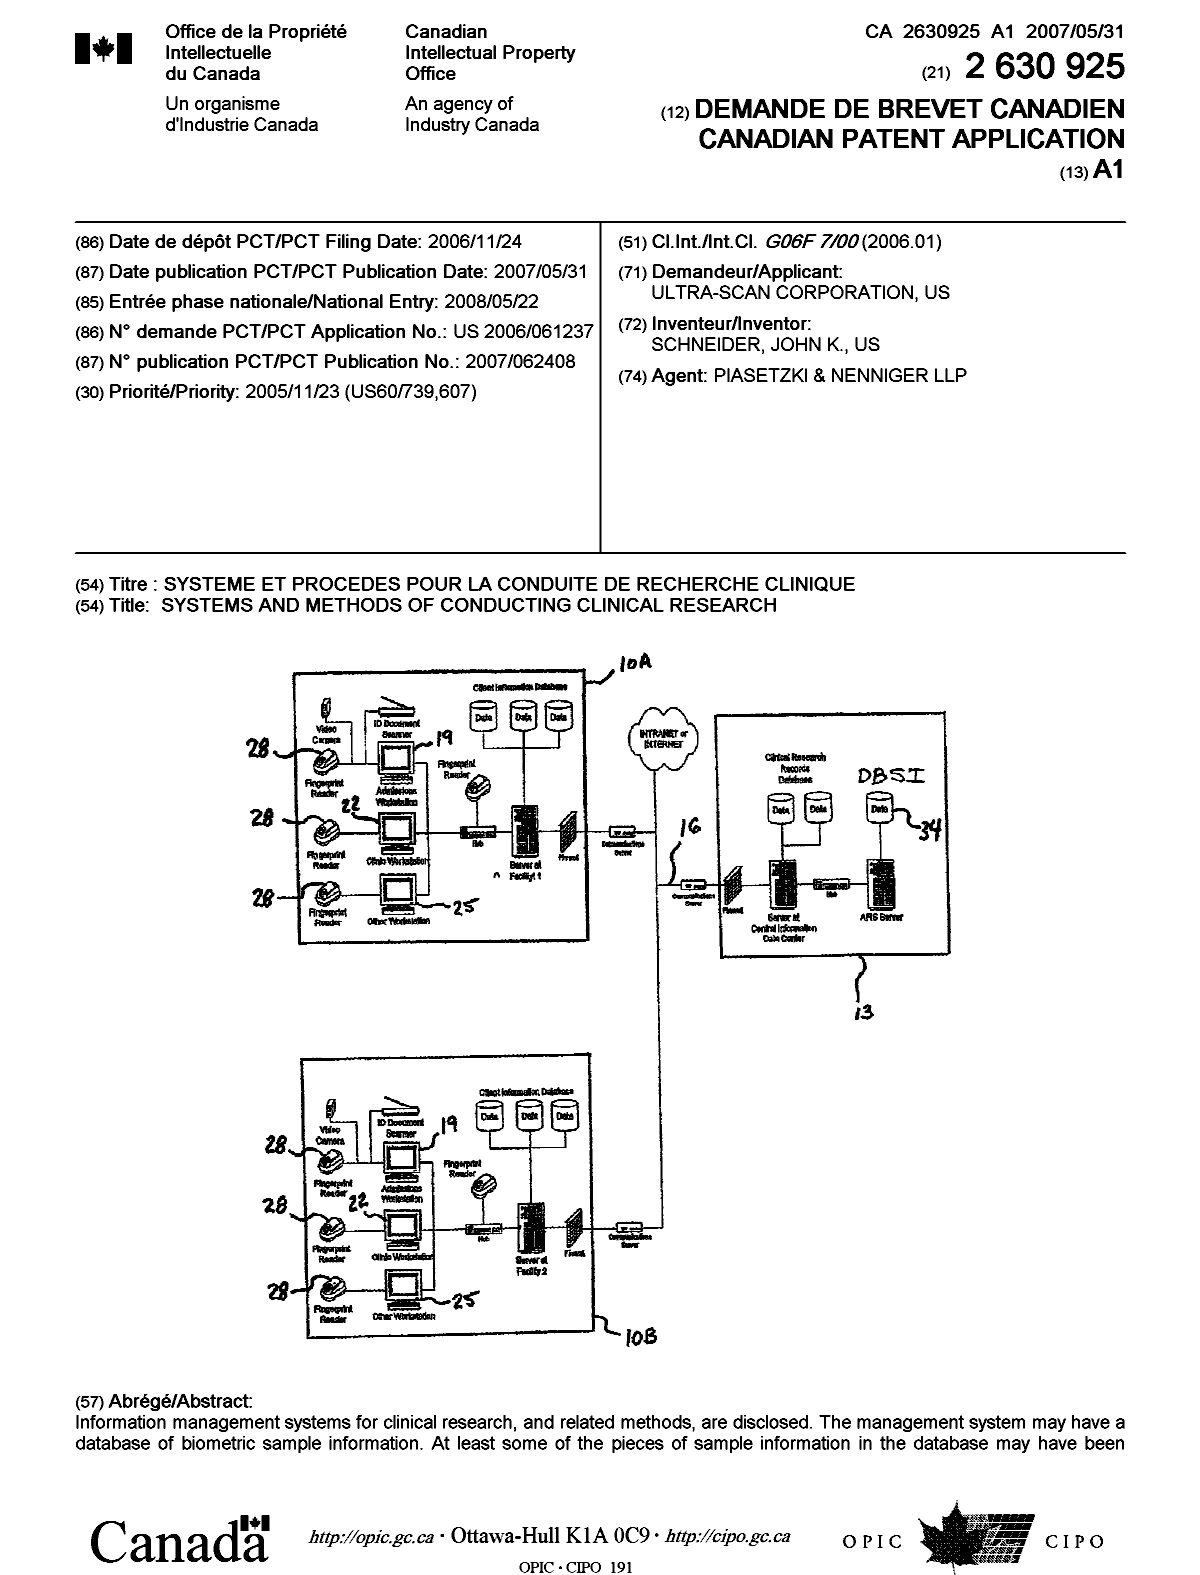 Document de brevet canadien 2630925. Page couverture 20080909. Image 1 de 2